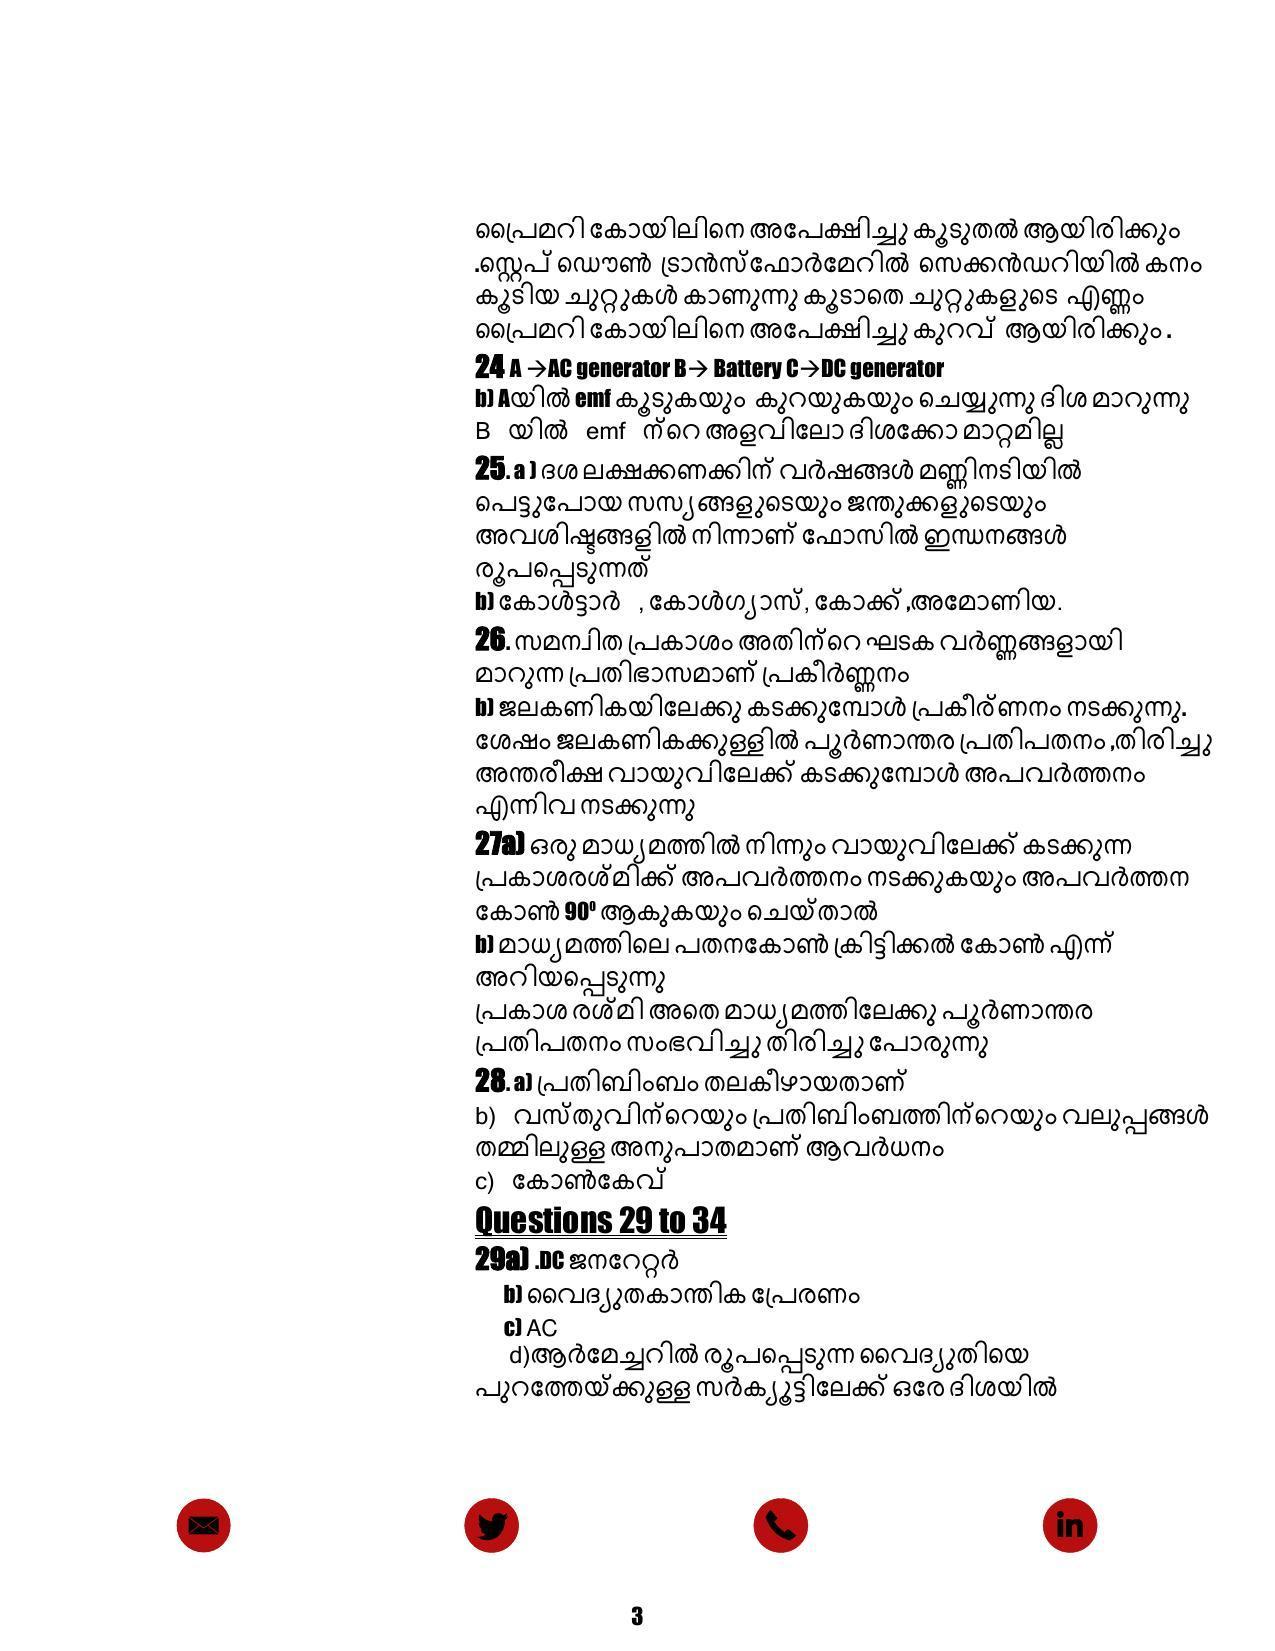 Kerala SSLC 2021 Physics (MM) Answer Key - Page 3